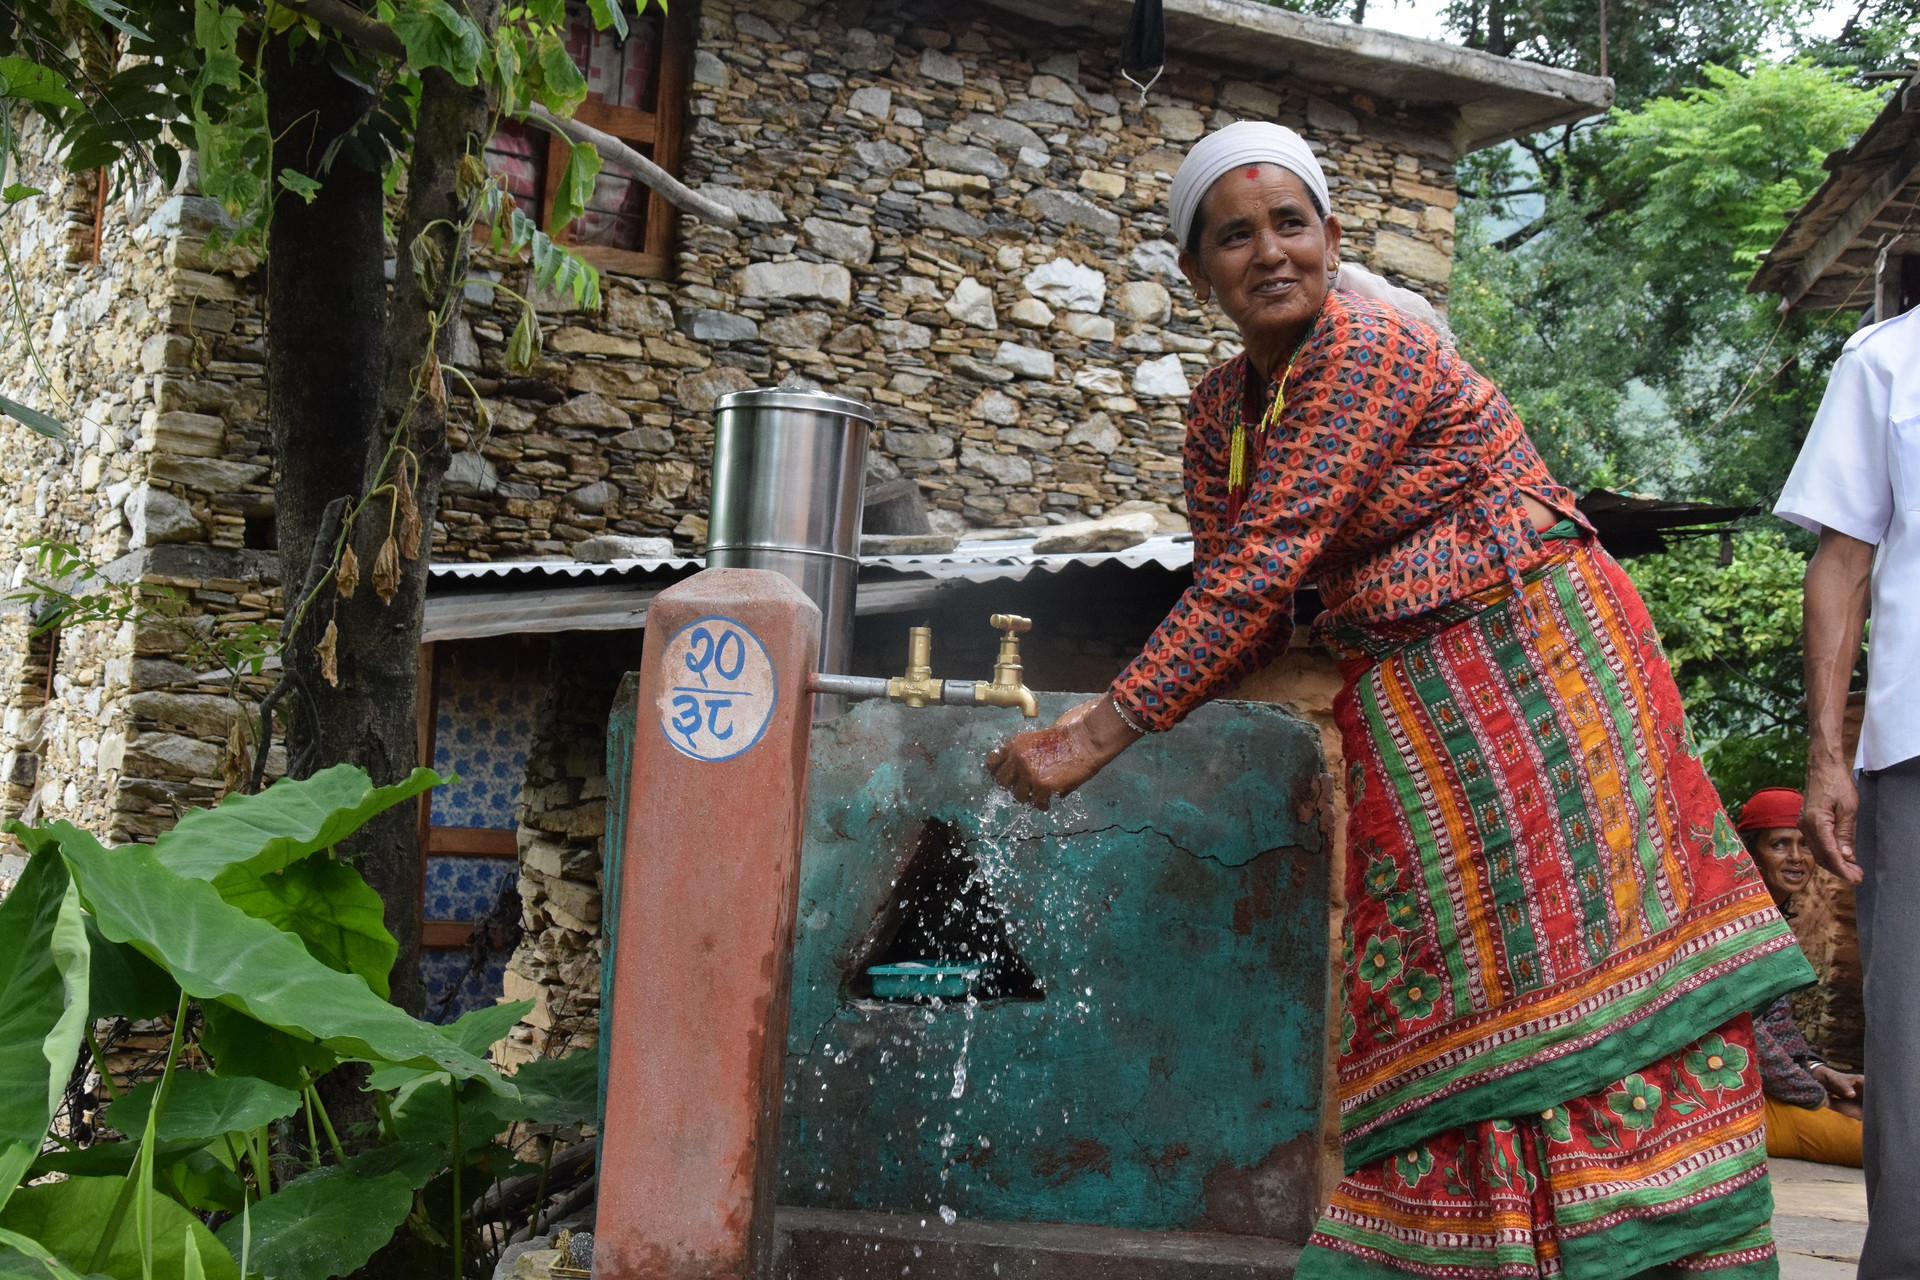 Vấn đề nước sạch vẫn luôn nhức nhối đối với người dân Nepal. Ảnh: CNA.